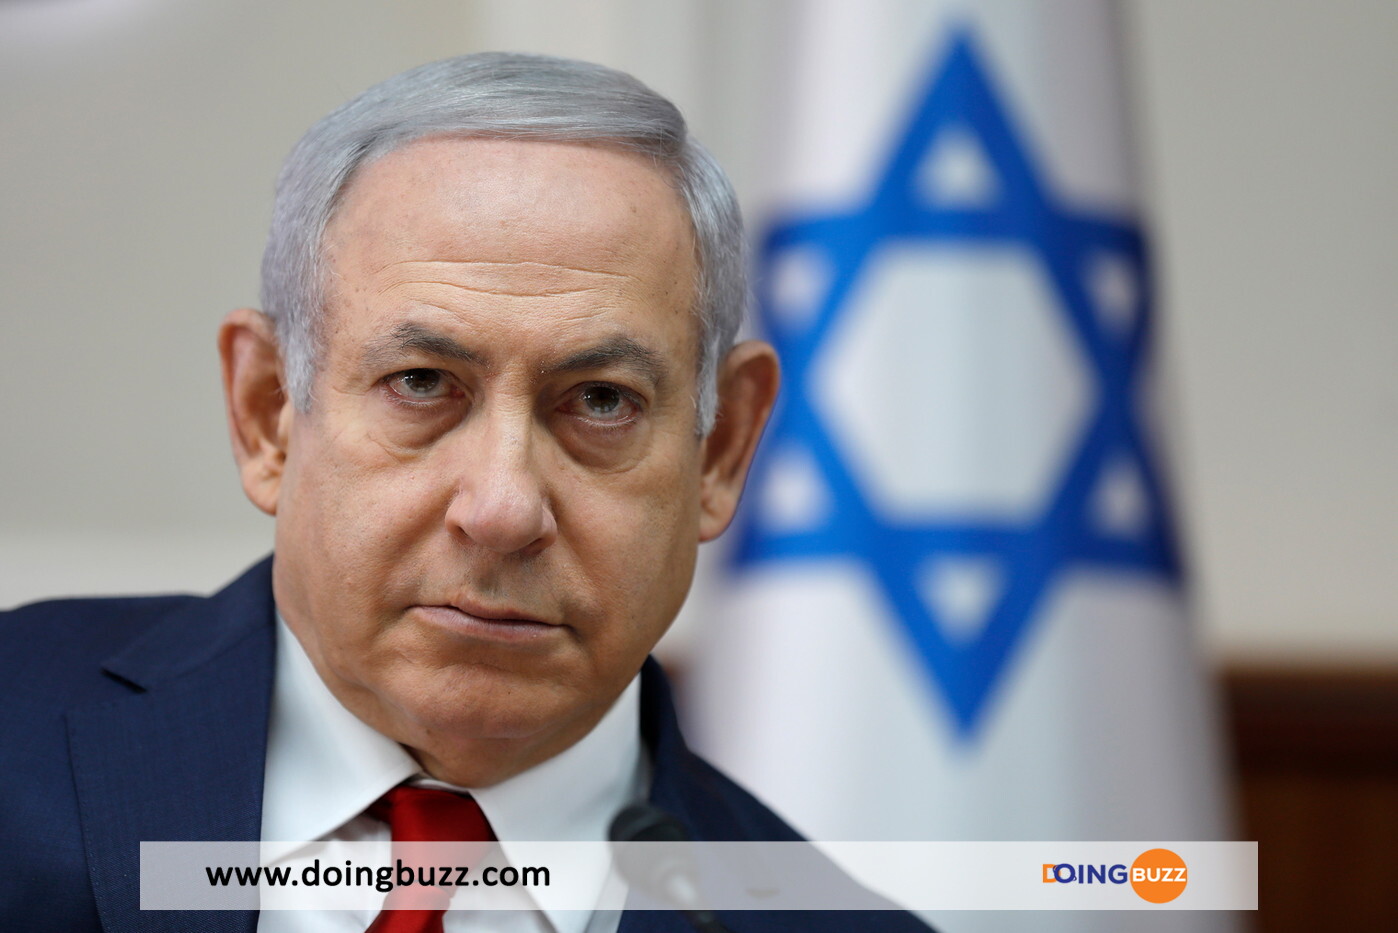 Le Premier Ministre Israélien Benjamin Netanyahu Hospitalisé, Les Détails